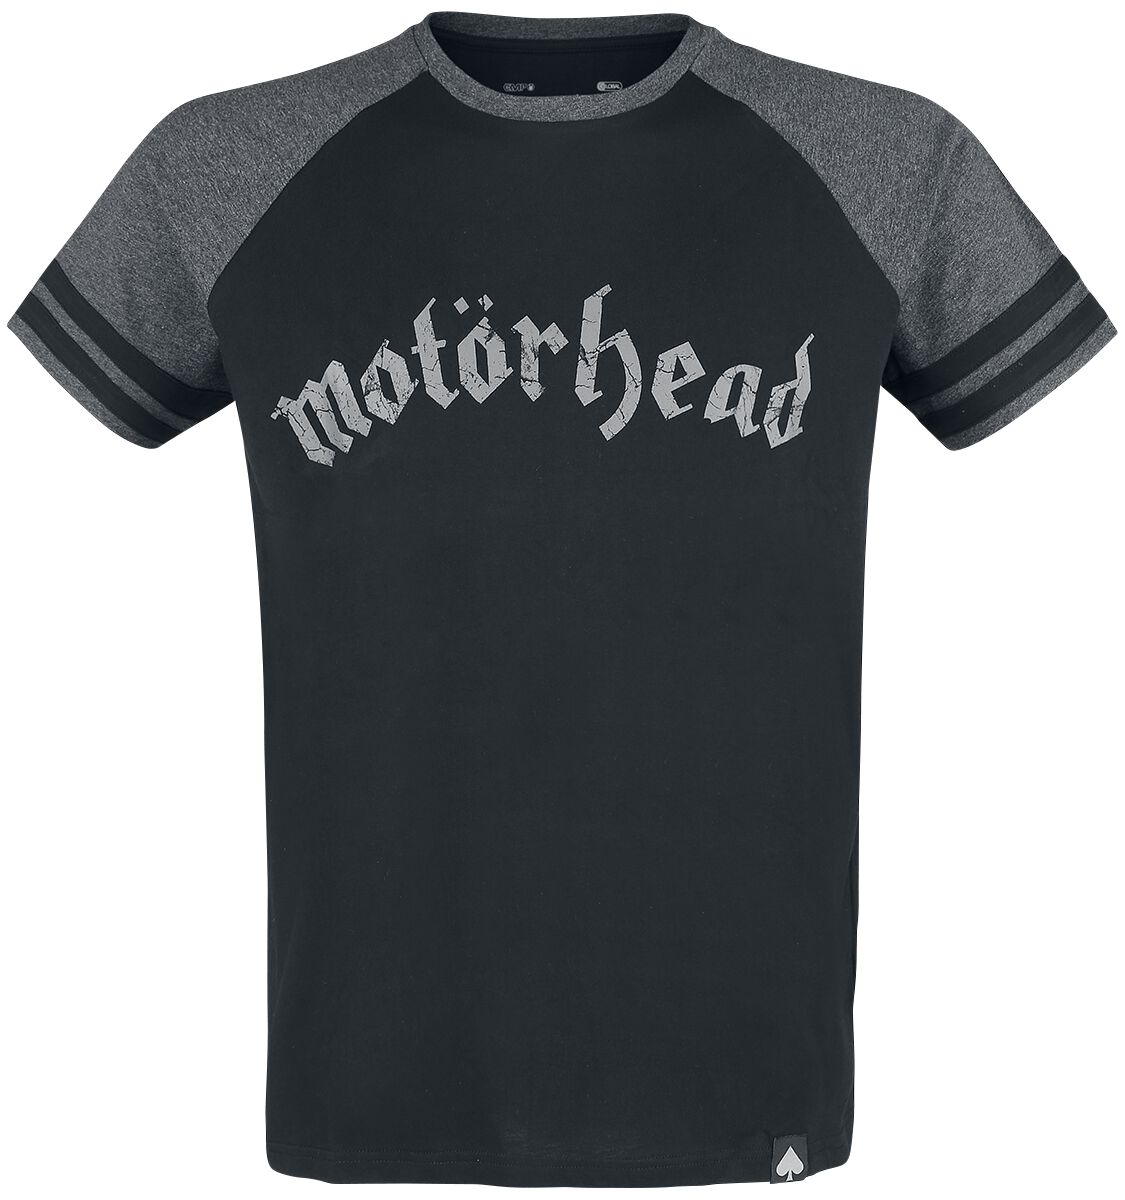 Motörhead T-Shirt - EMP Signature Collection - S bis 5XL - für Männer - Größe XL - schwarz/grau meliert  - EMP exklusives Merchandise!